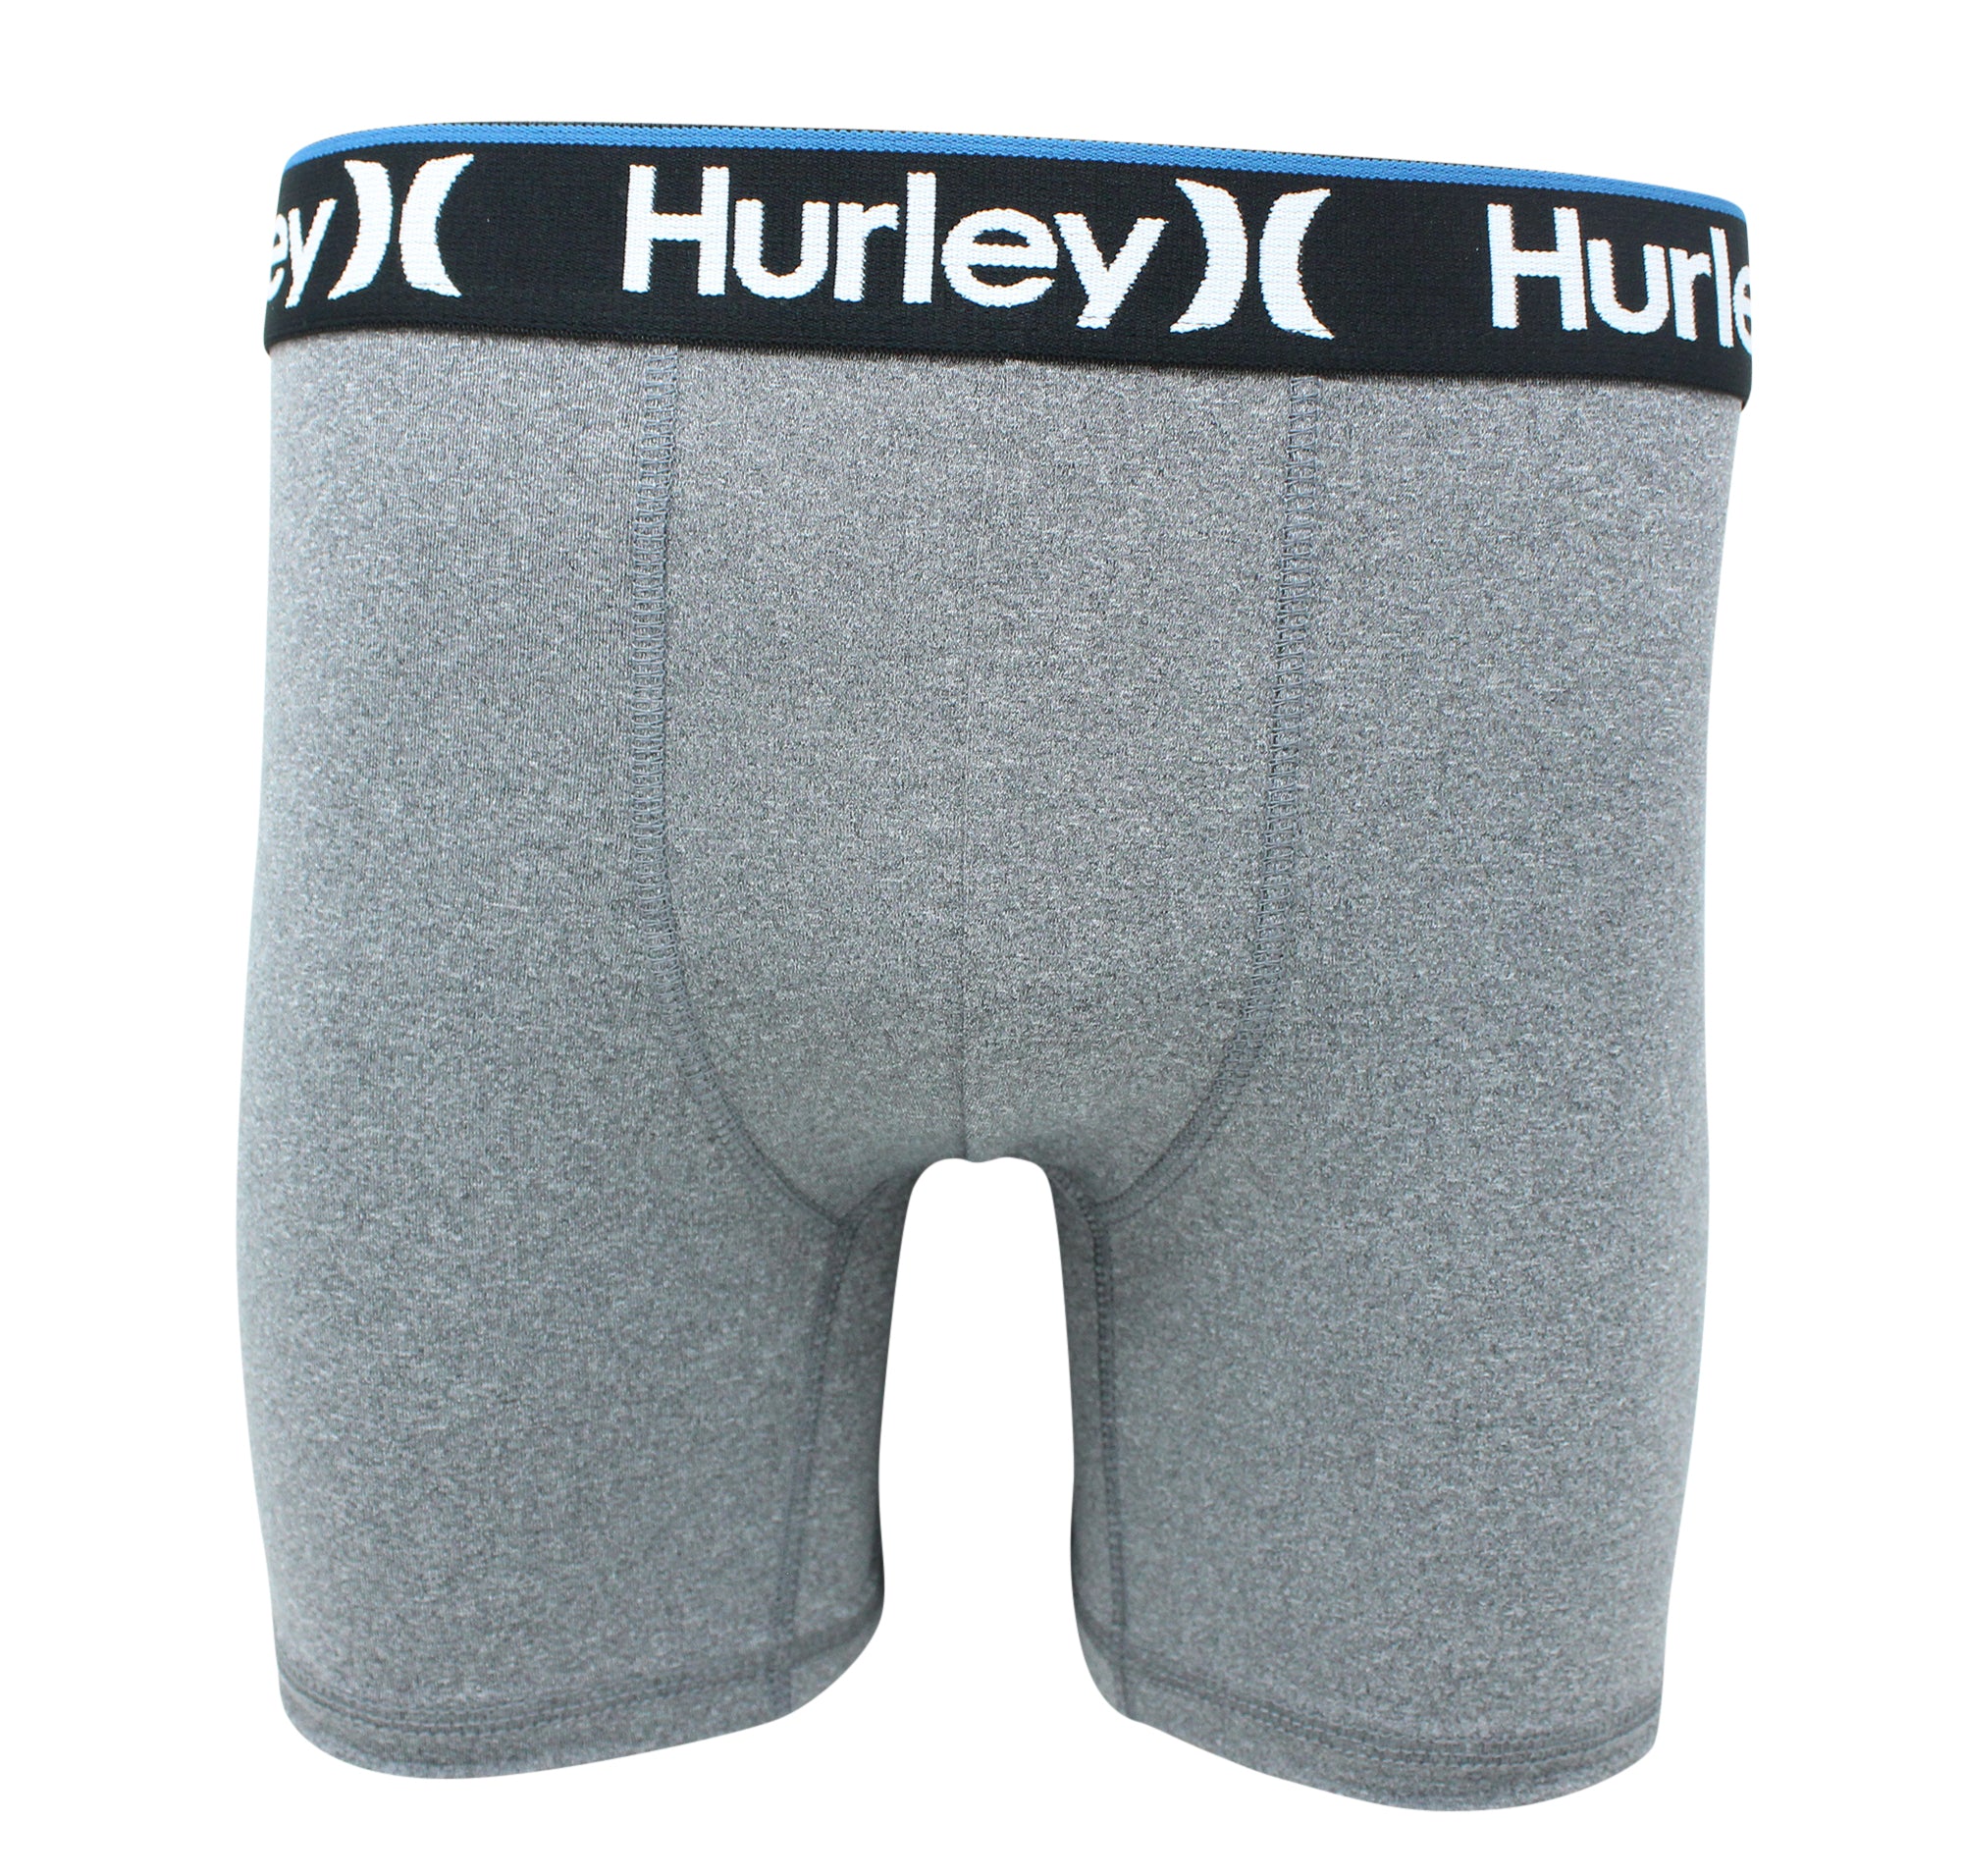 HURLEY BOXER X3 - XLARGE - MEN BRIEF UNDERWEAR 3 PACK